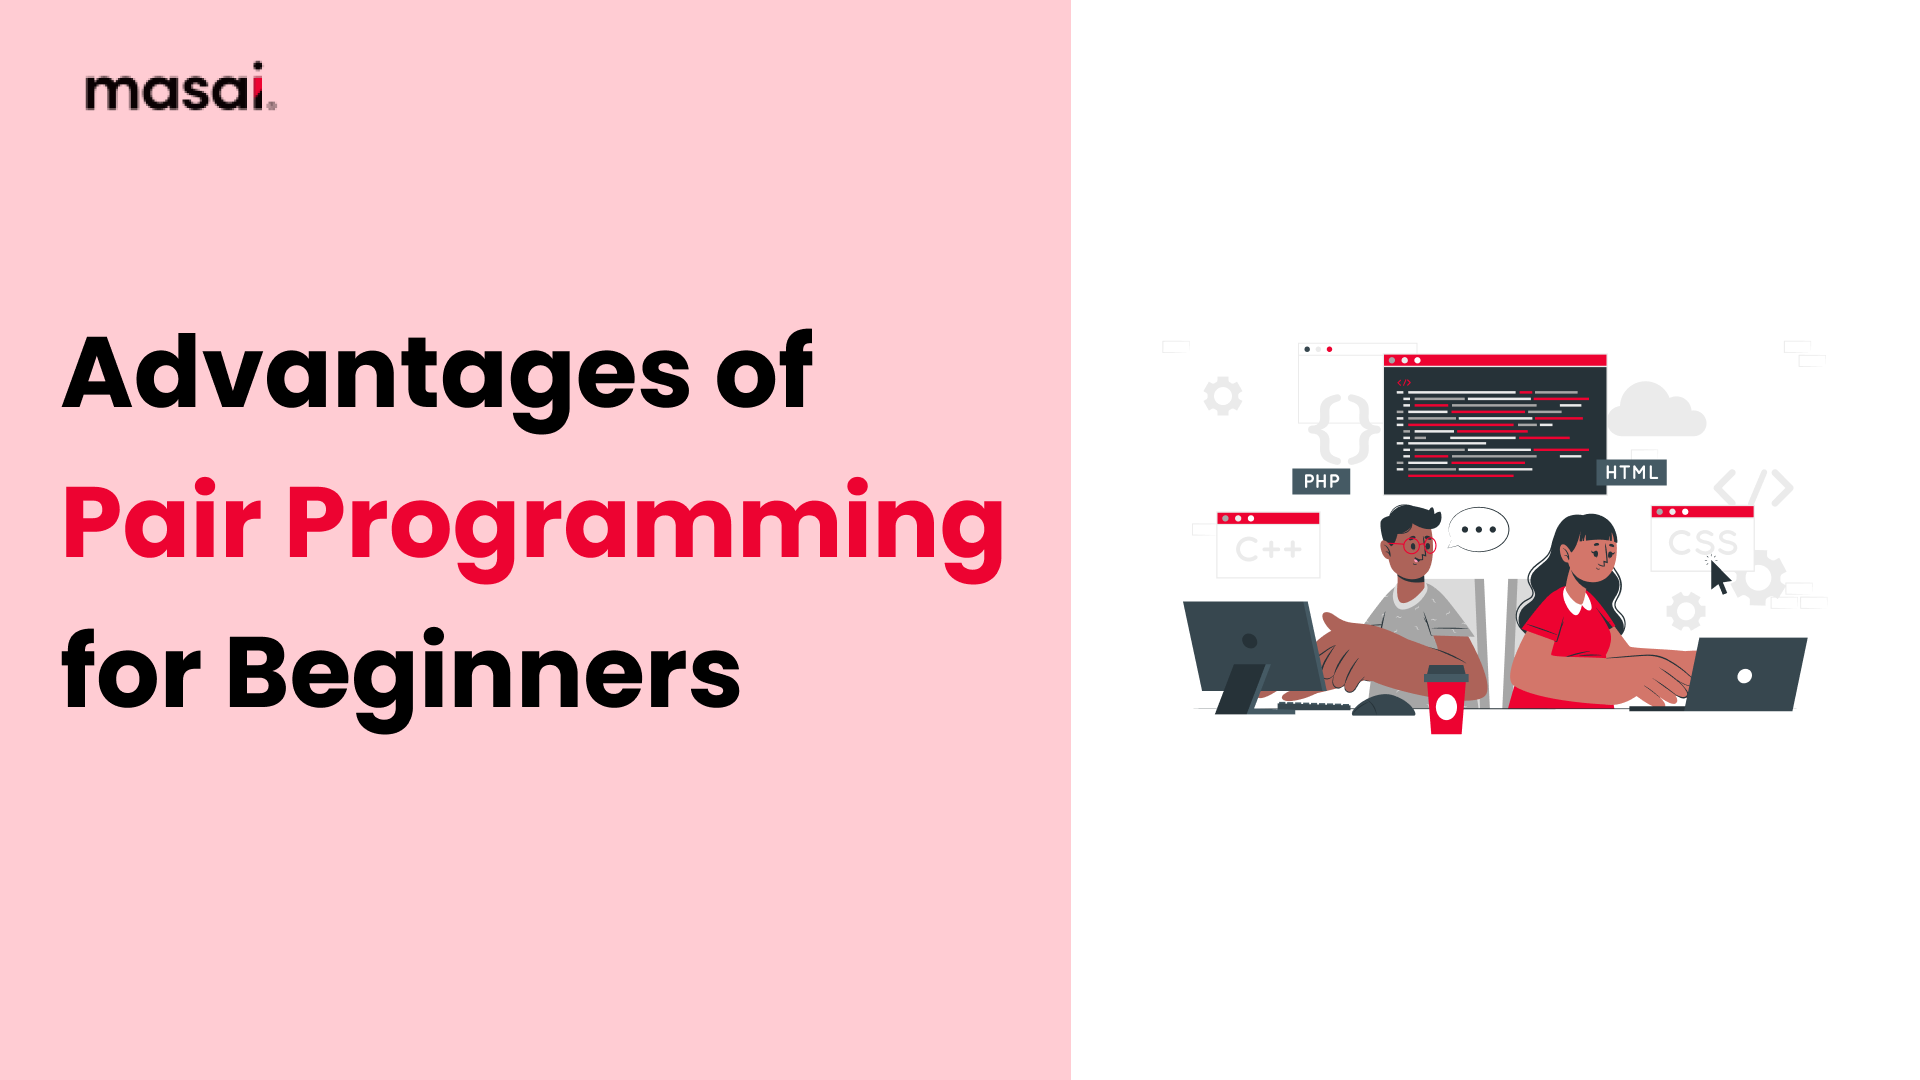 Programming for Beginners